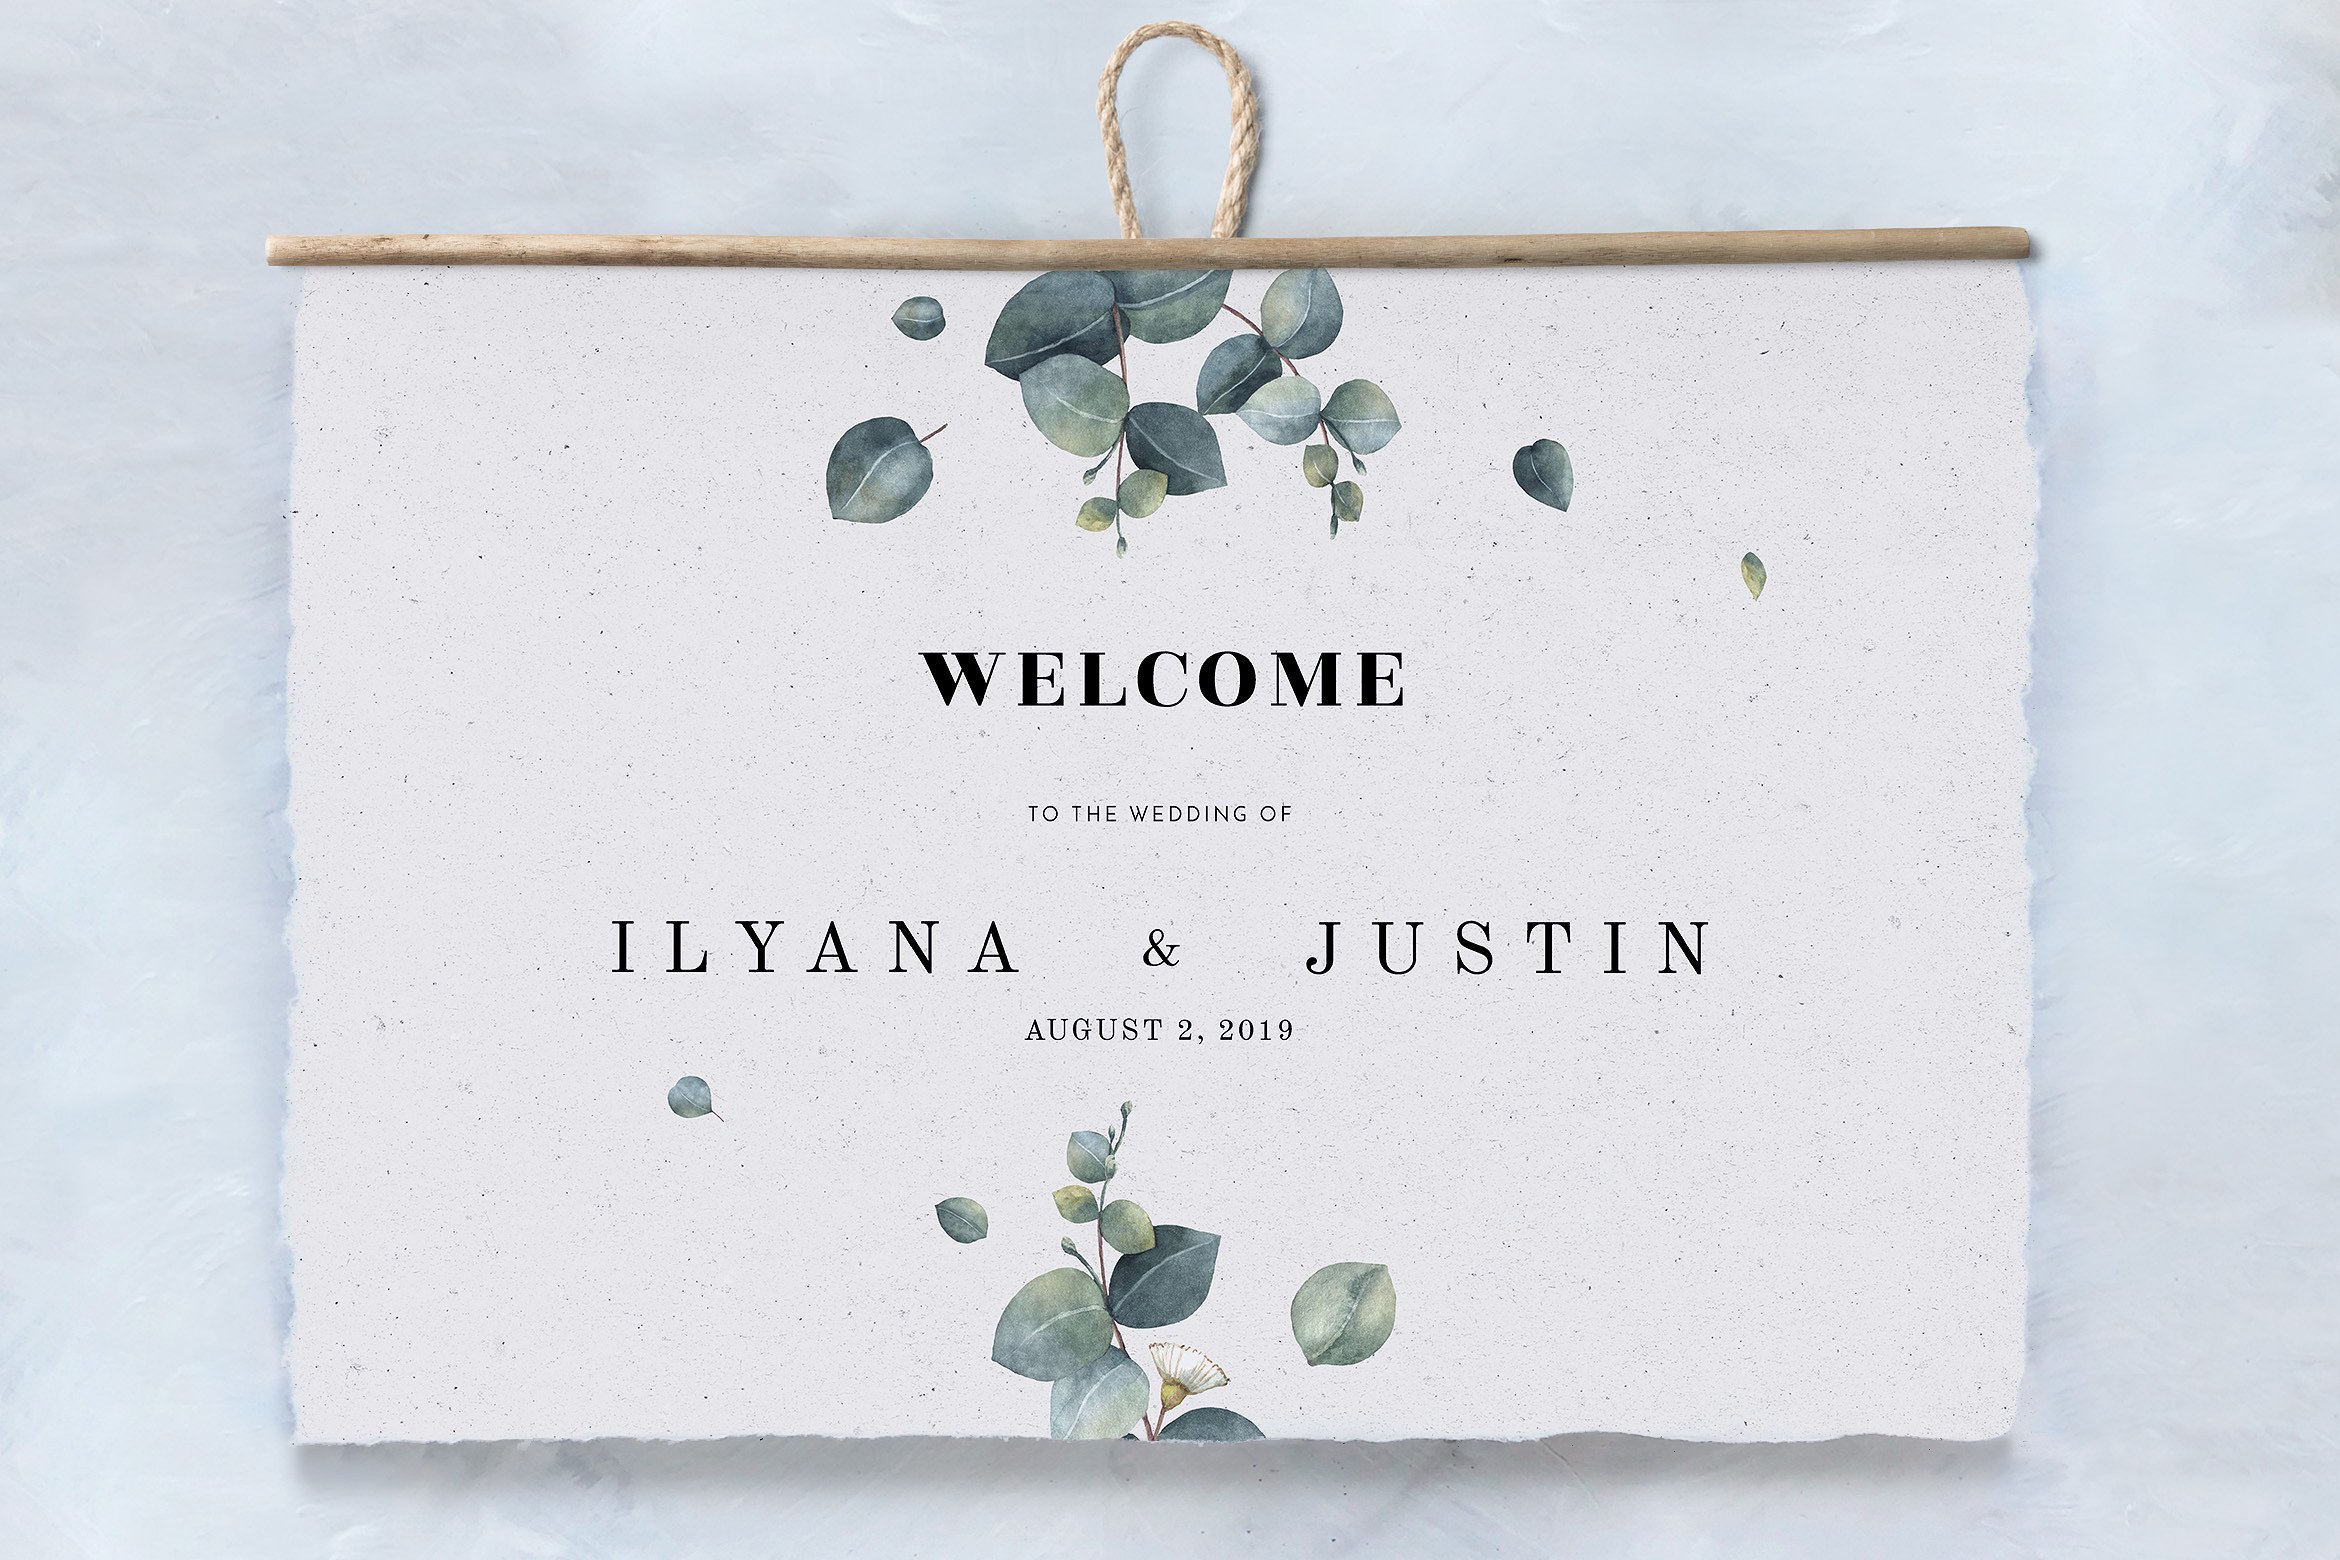 桉树树叶装饰婚礼设计套件 Eucalyptus Foliage Wedding Suite插图(2)